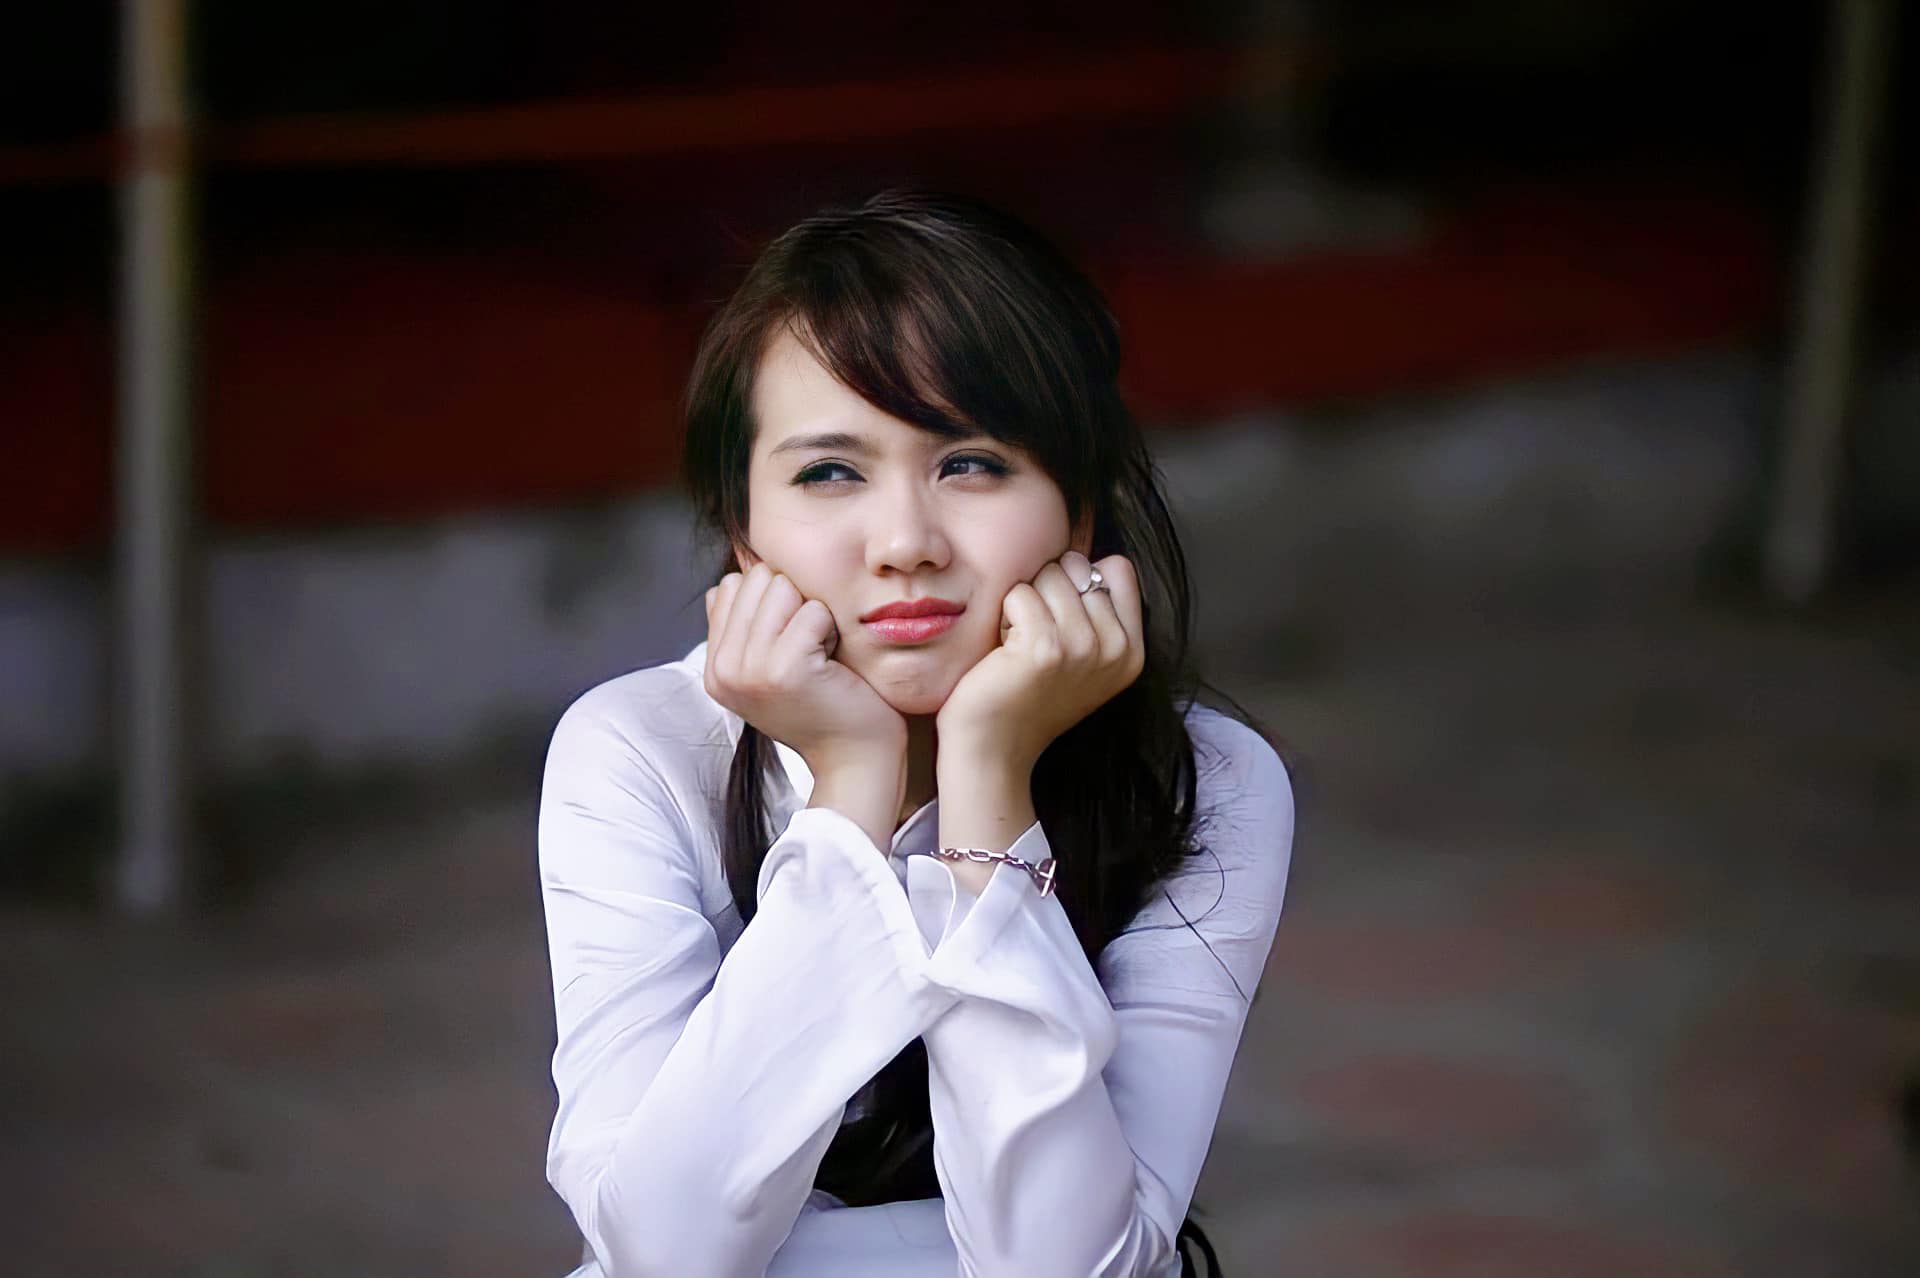 Sao Việt khoe ảnh ngày khai giảng: Hoa hậu Kỳ Duyên 'ngố tàu', Midu thiếu nữ trong trẻo - Ảnh 5